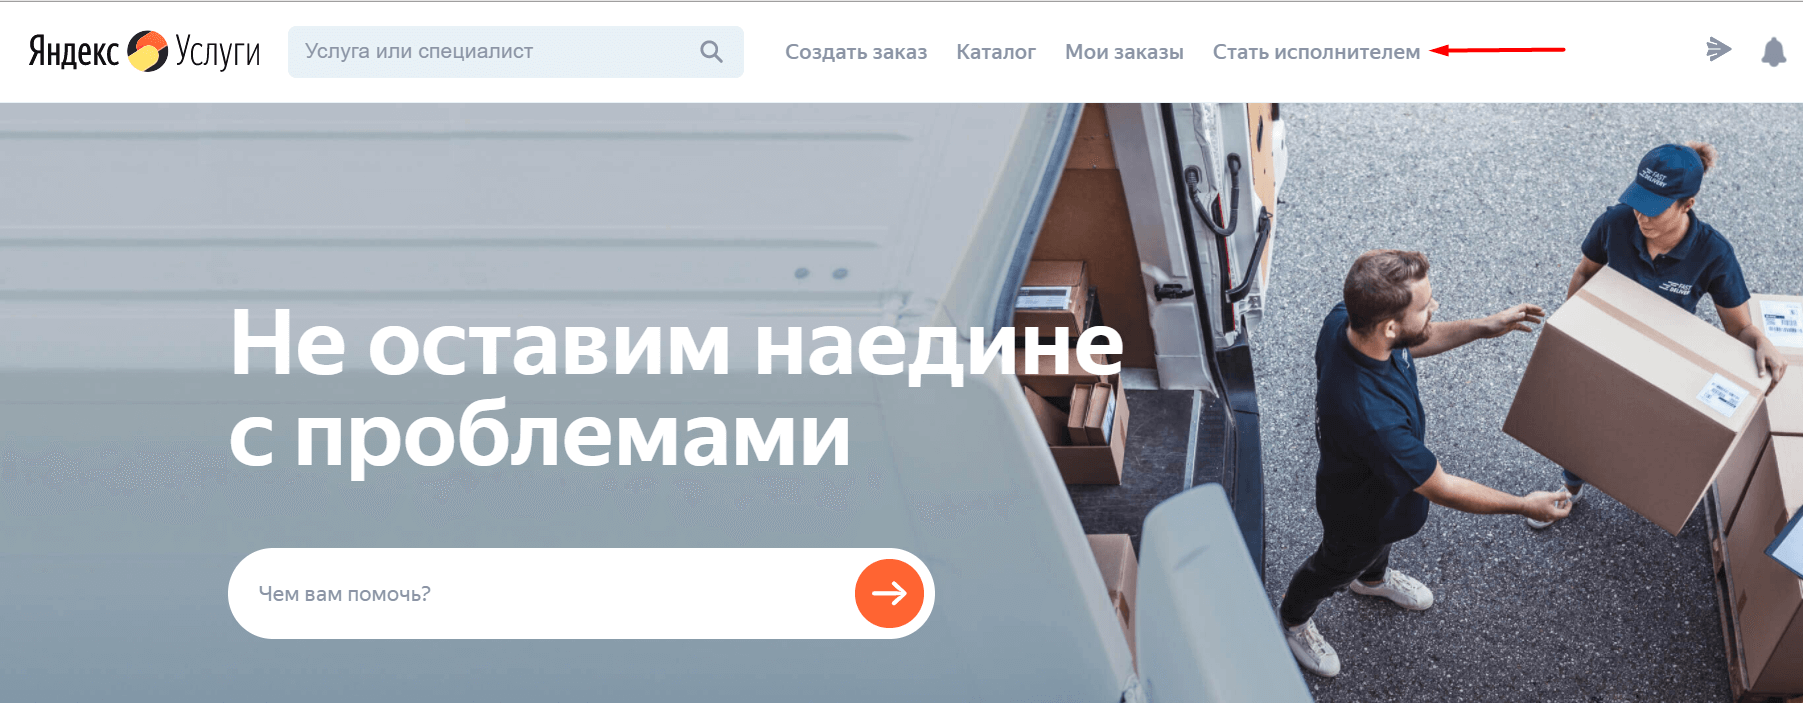 как стать исполнителем на Яндекс Услугах